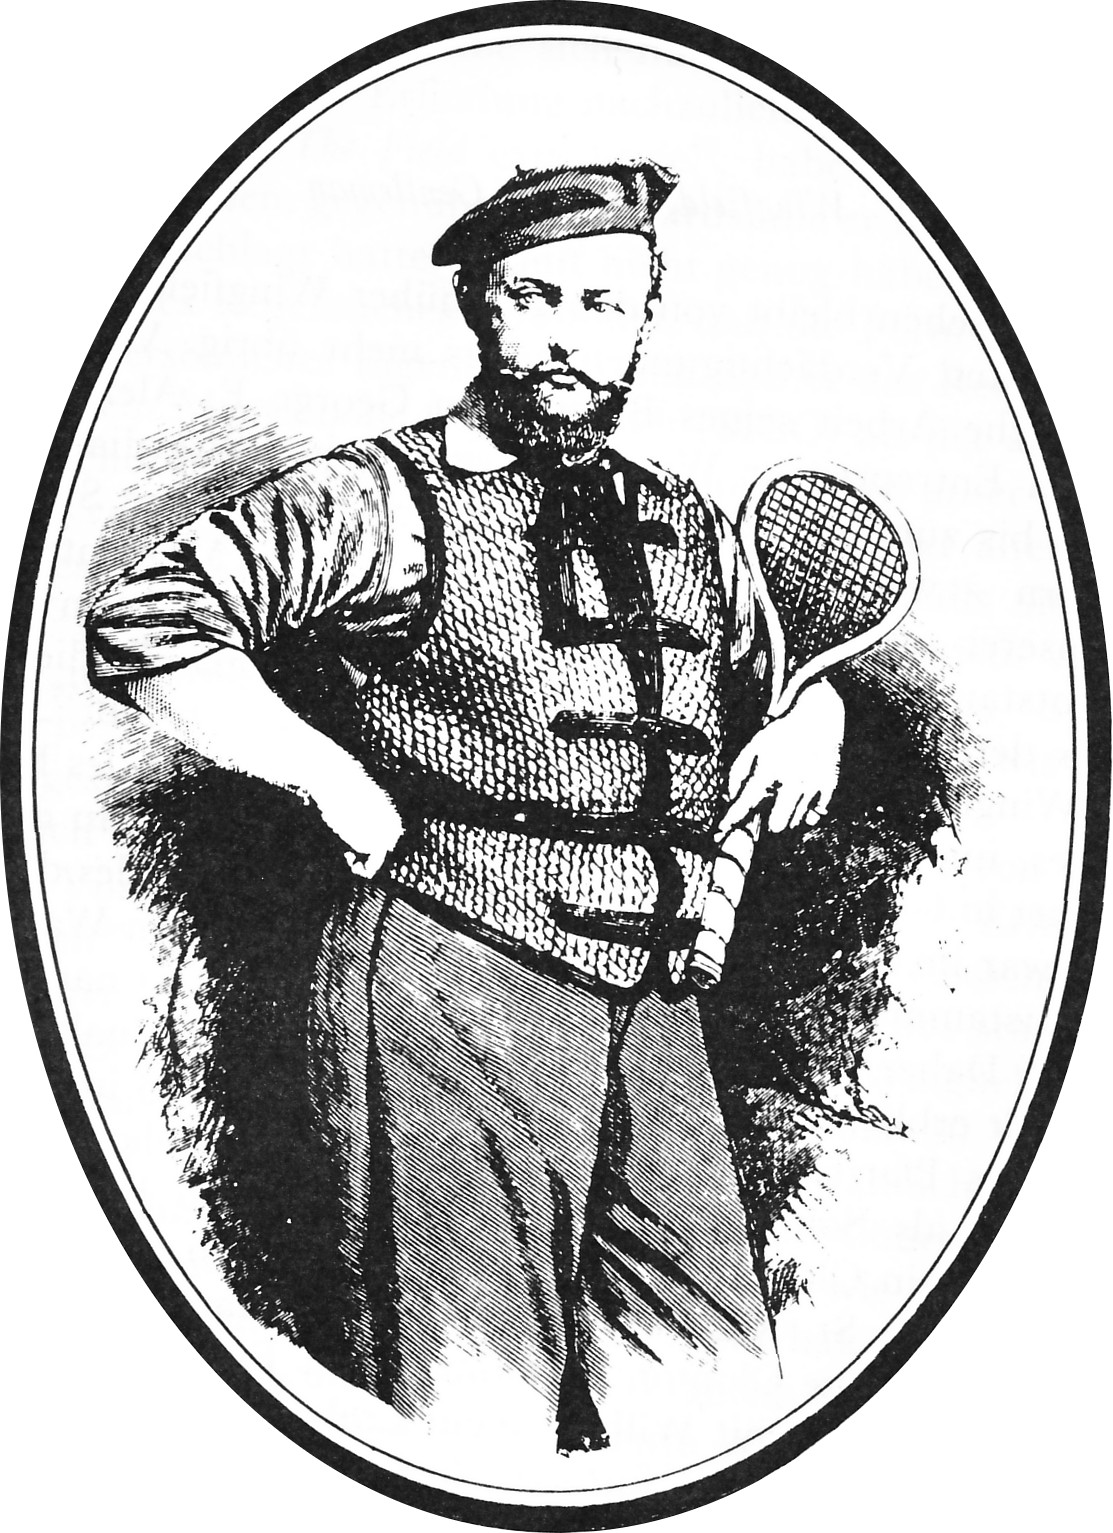 Волтер Уінгфілд - засновник тенісу